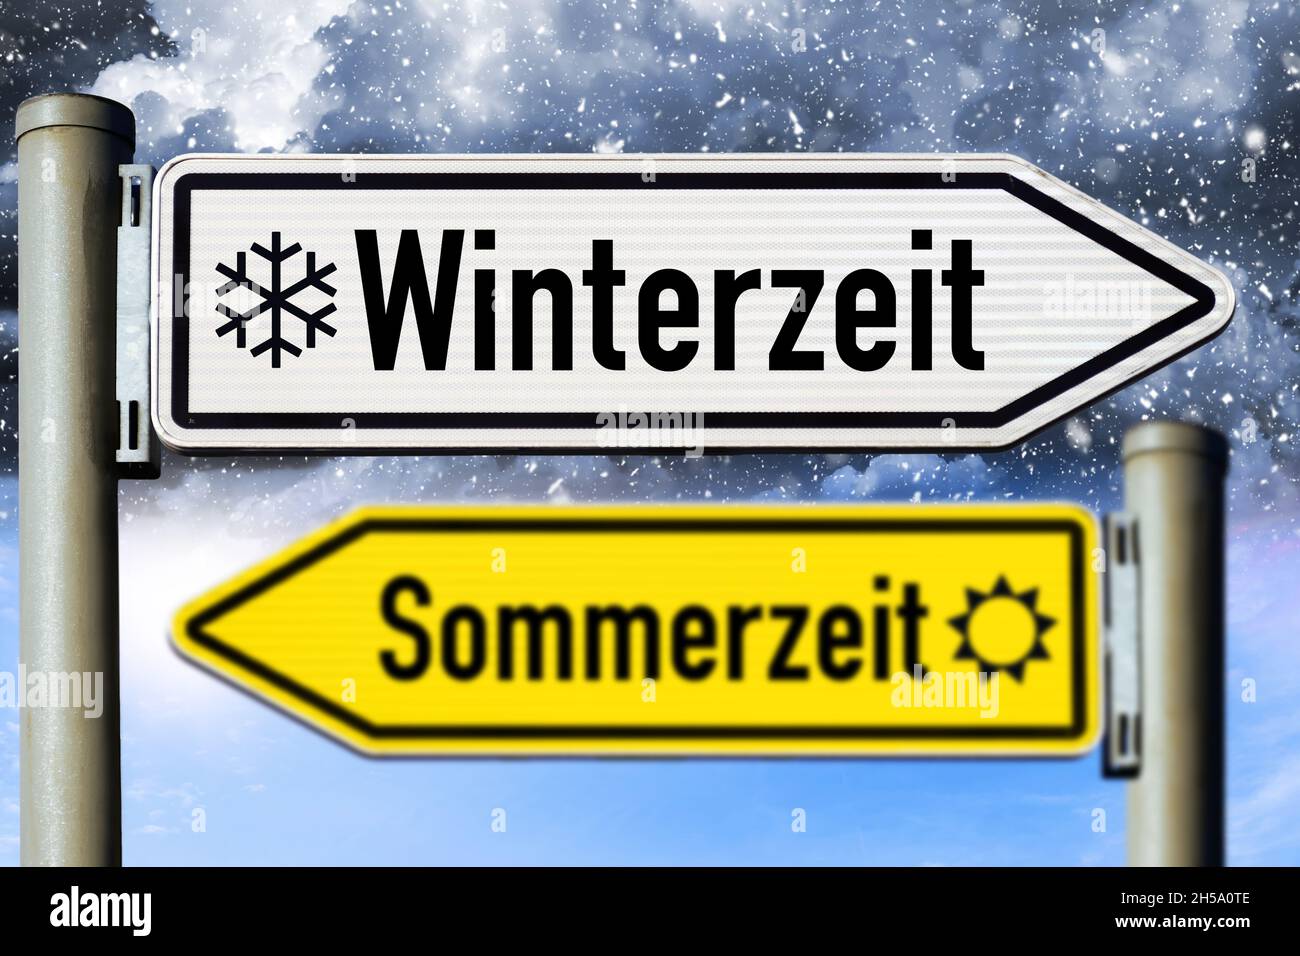 FONTOMONTAGE, Wegweiser Winterzeit und Sommerzeit, Symbolfoto Rückstellung auf Winterzeit, Zeitumstellung Foto Stock